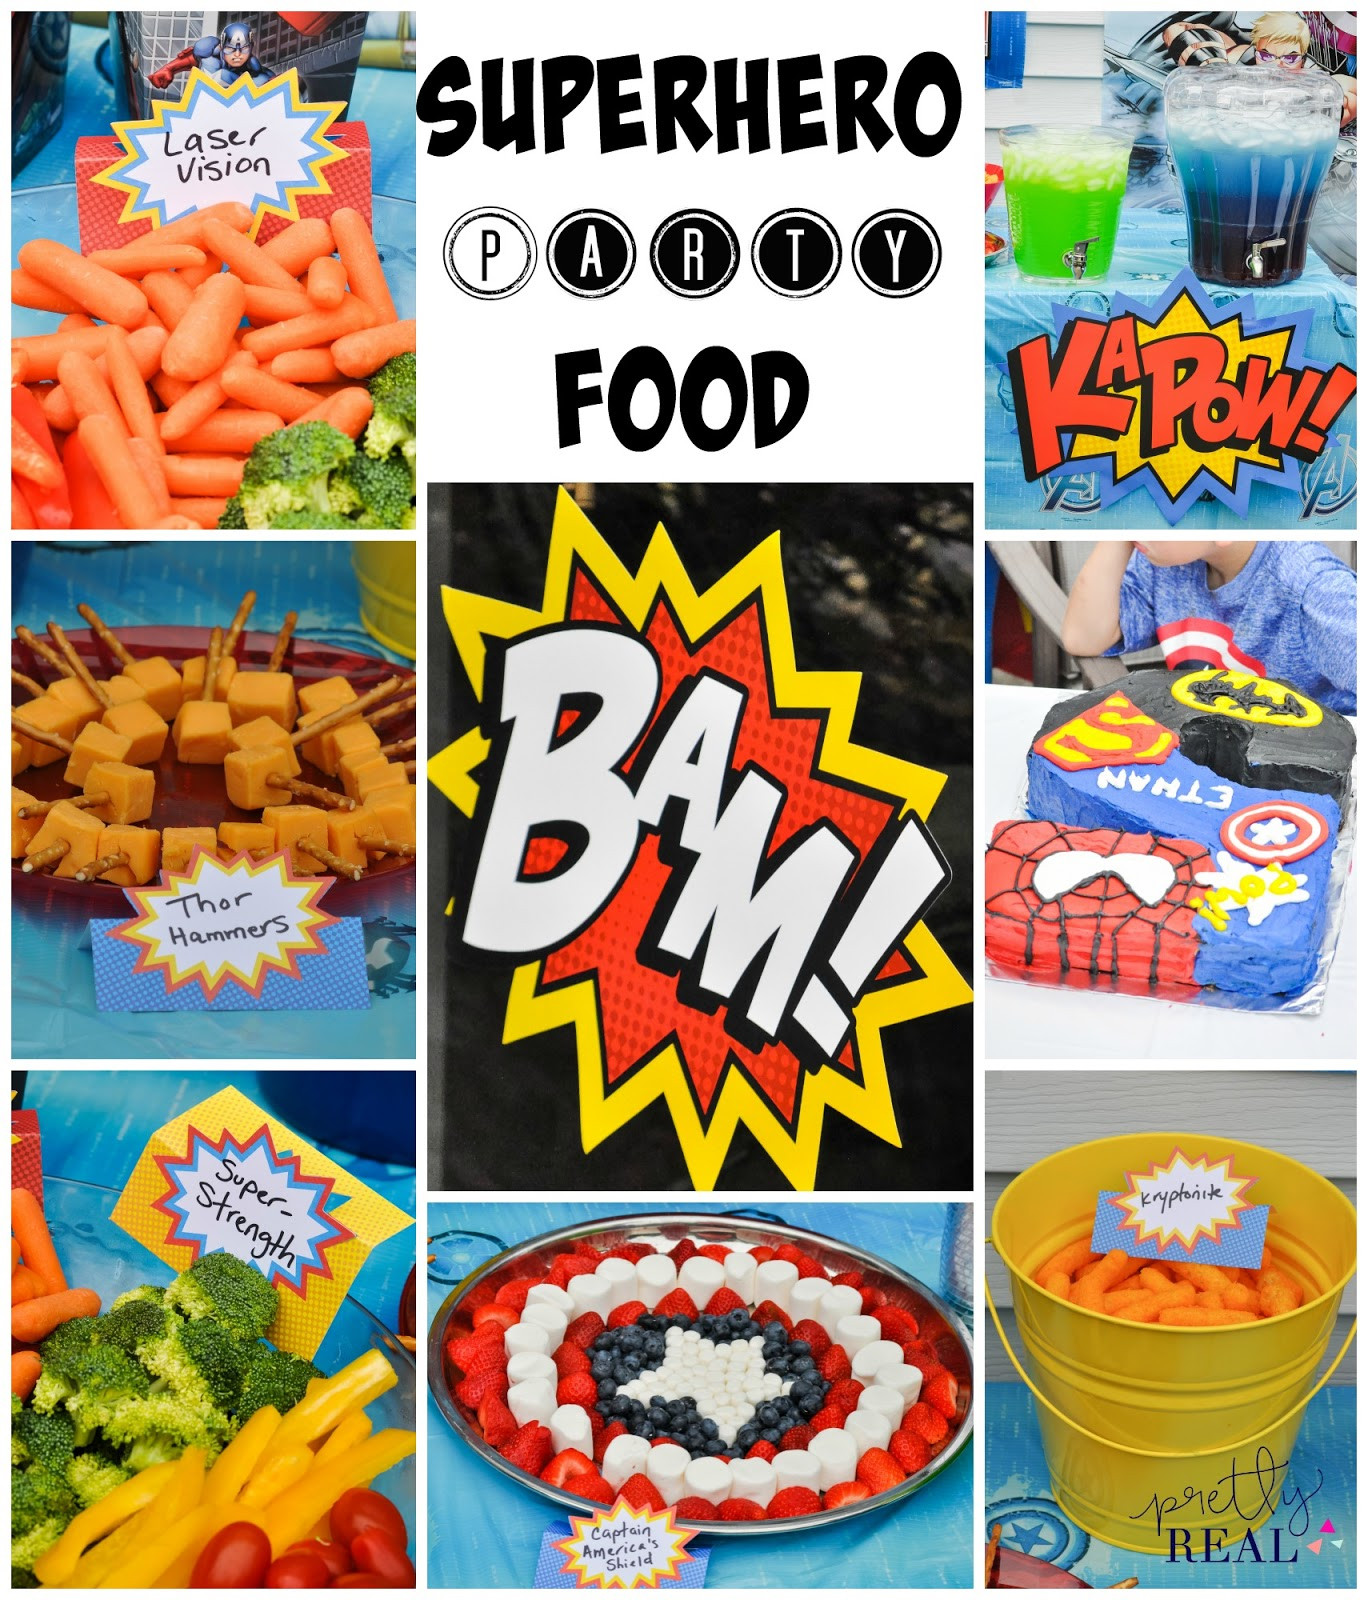 Superhero Party Food Ideas
 Super Cute Superhero Party with Zero DIY Pretty Real